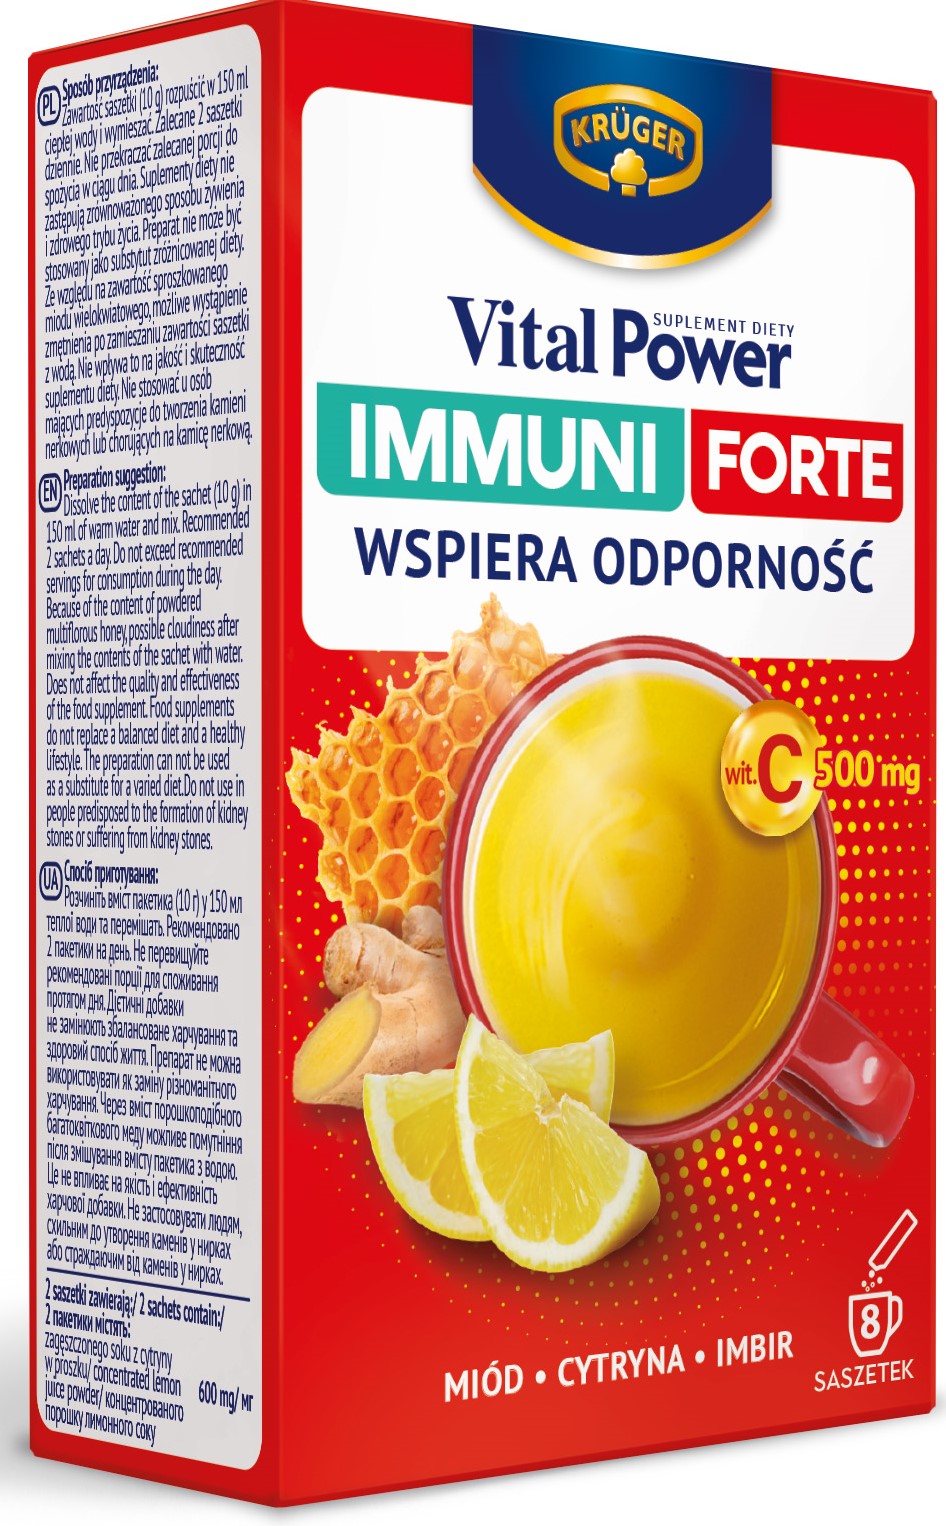 Vital Power Immuni Forte Unterstützt die Immunität, Honig, Zitrone, Ingwer, Vitamin C